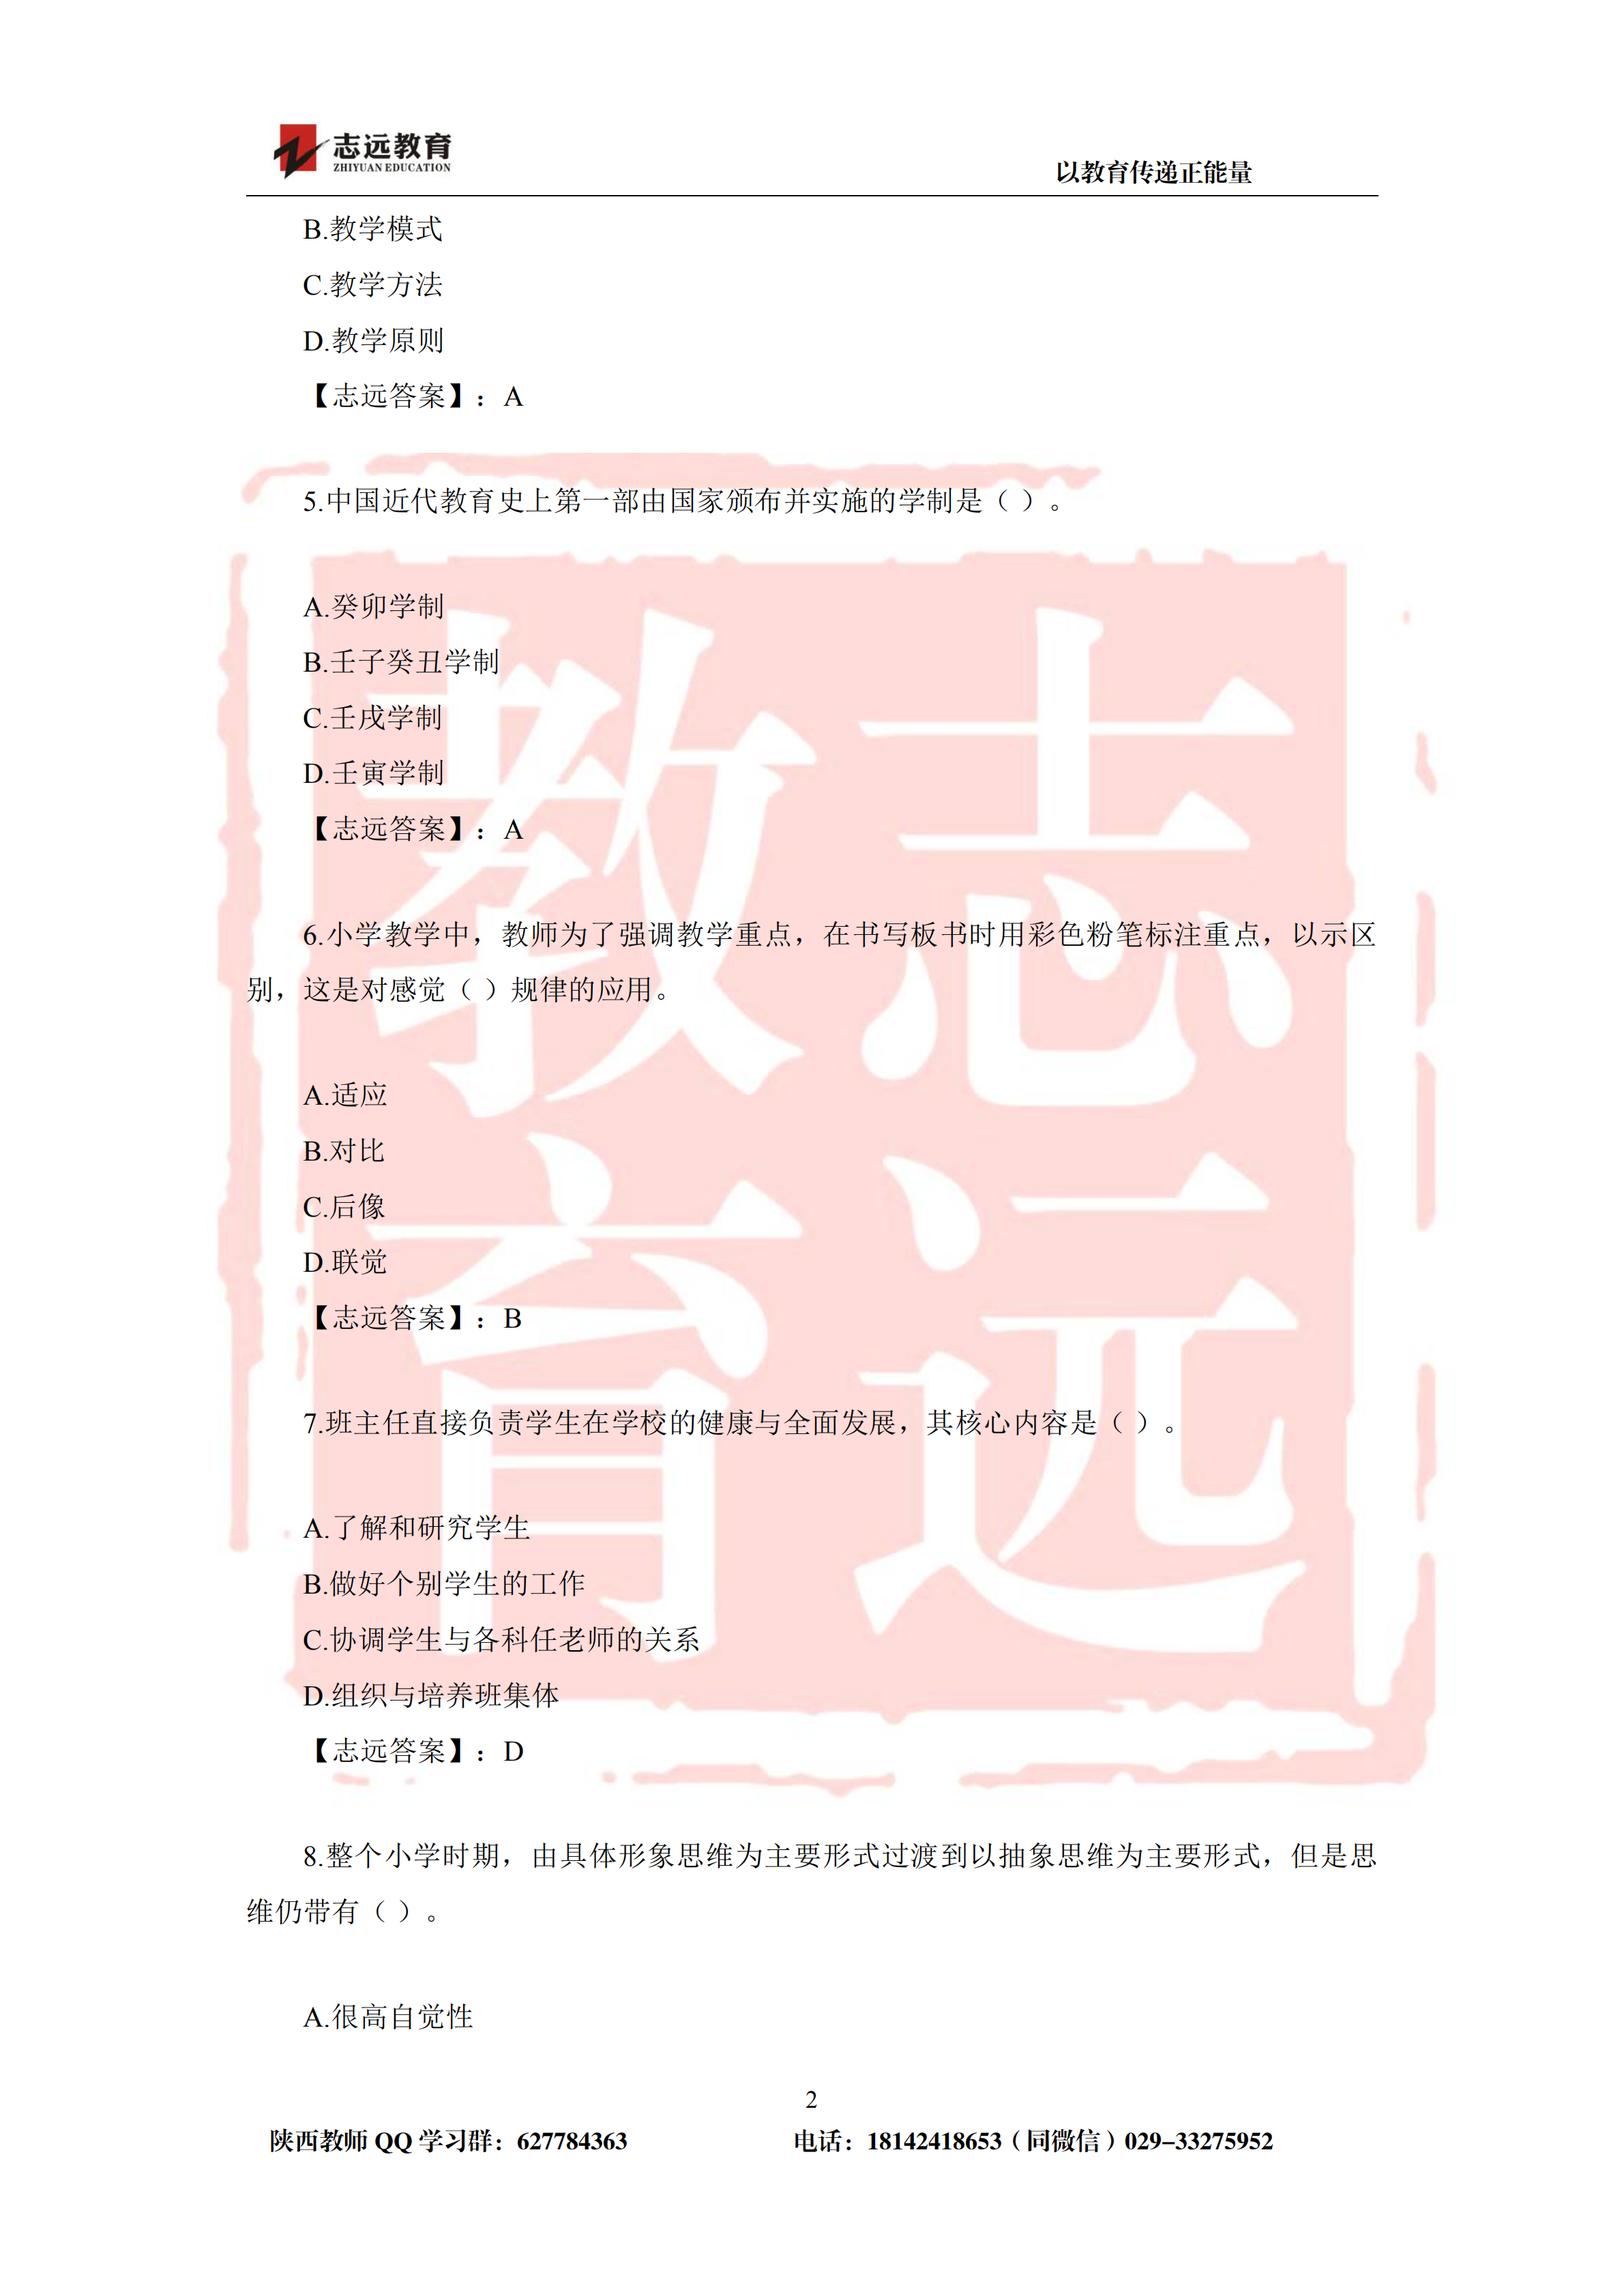 2019年陕西省特岗教师小学试题及答案-志远学员回忆版(图2)